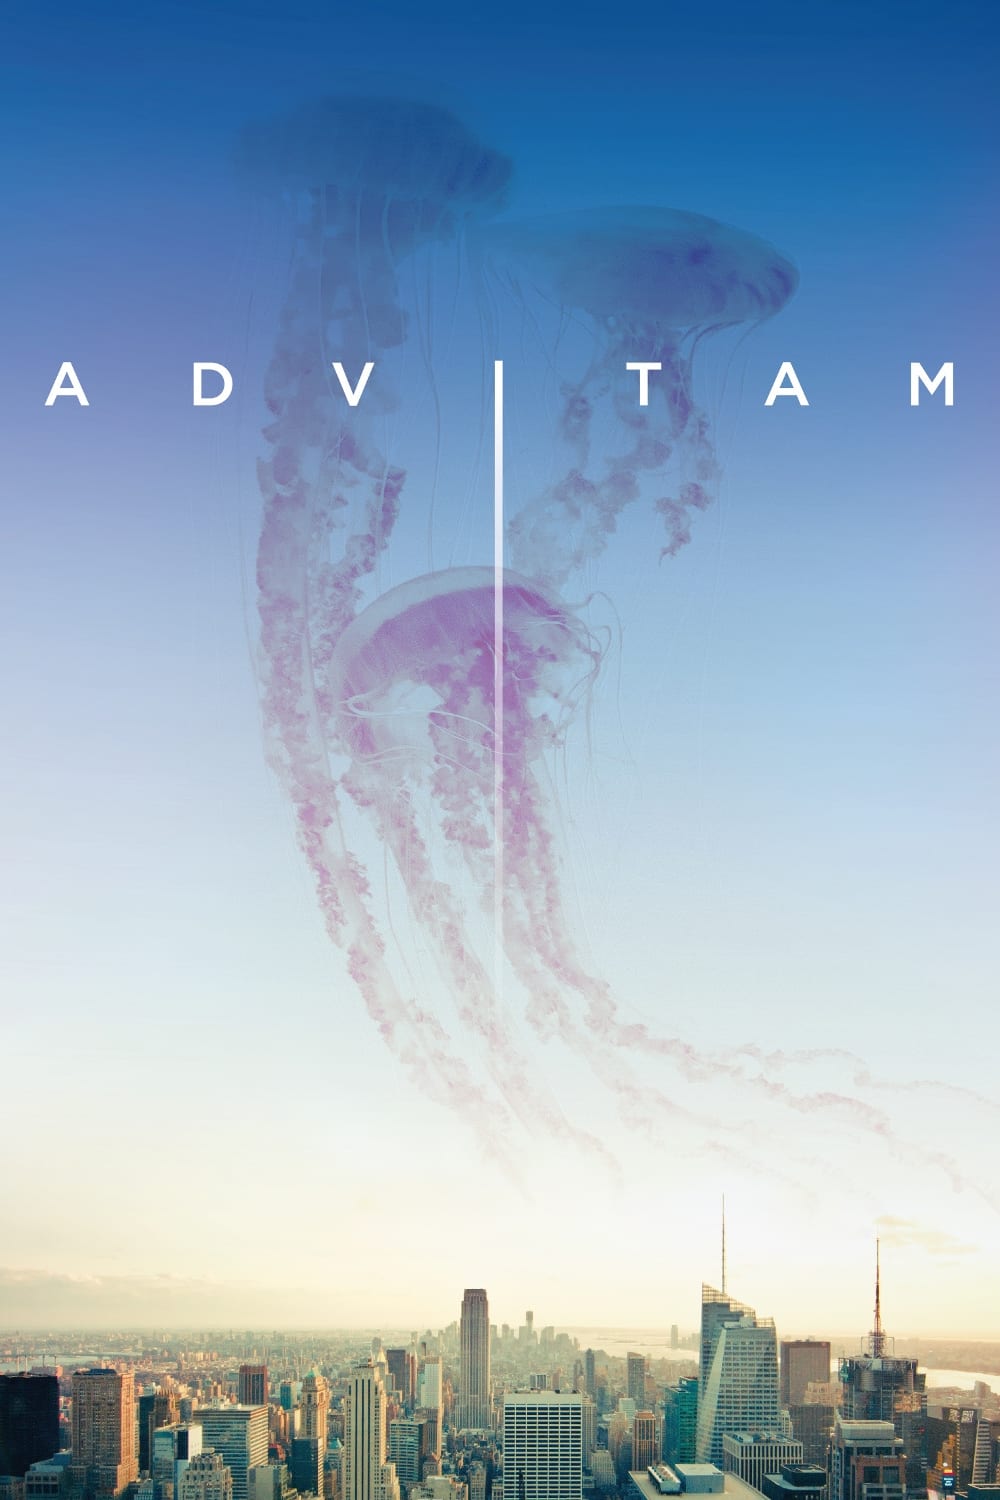 Les saisons de Ad Vitam sont-elles disponibles sur Netflix ou autre ?